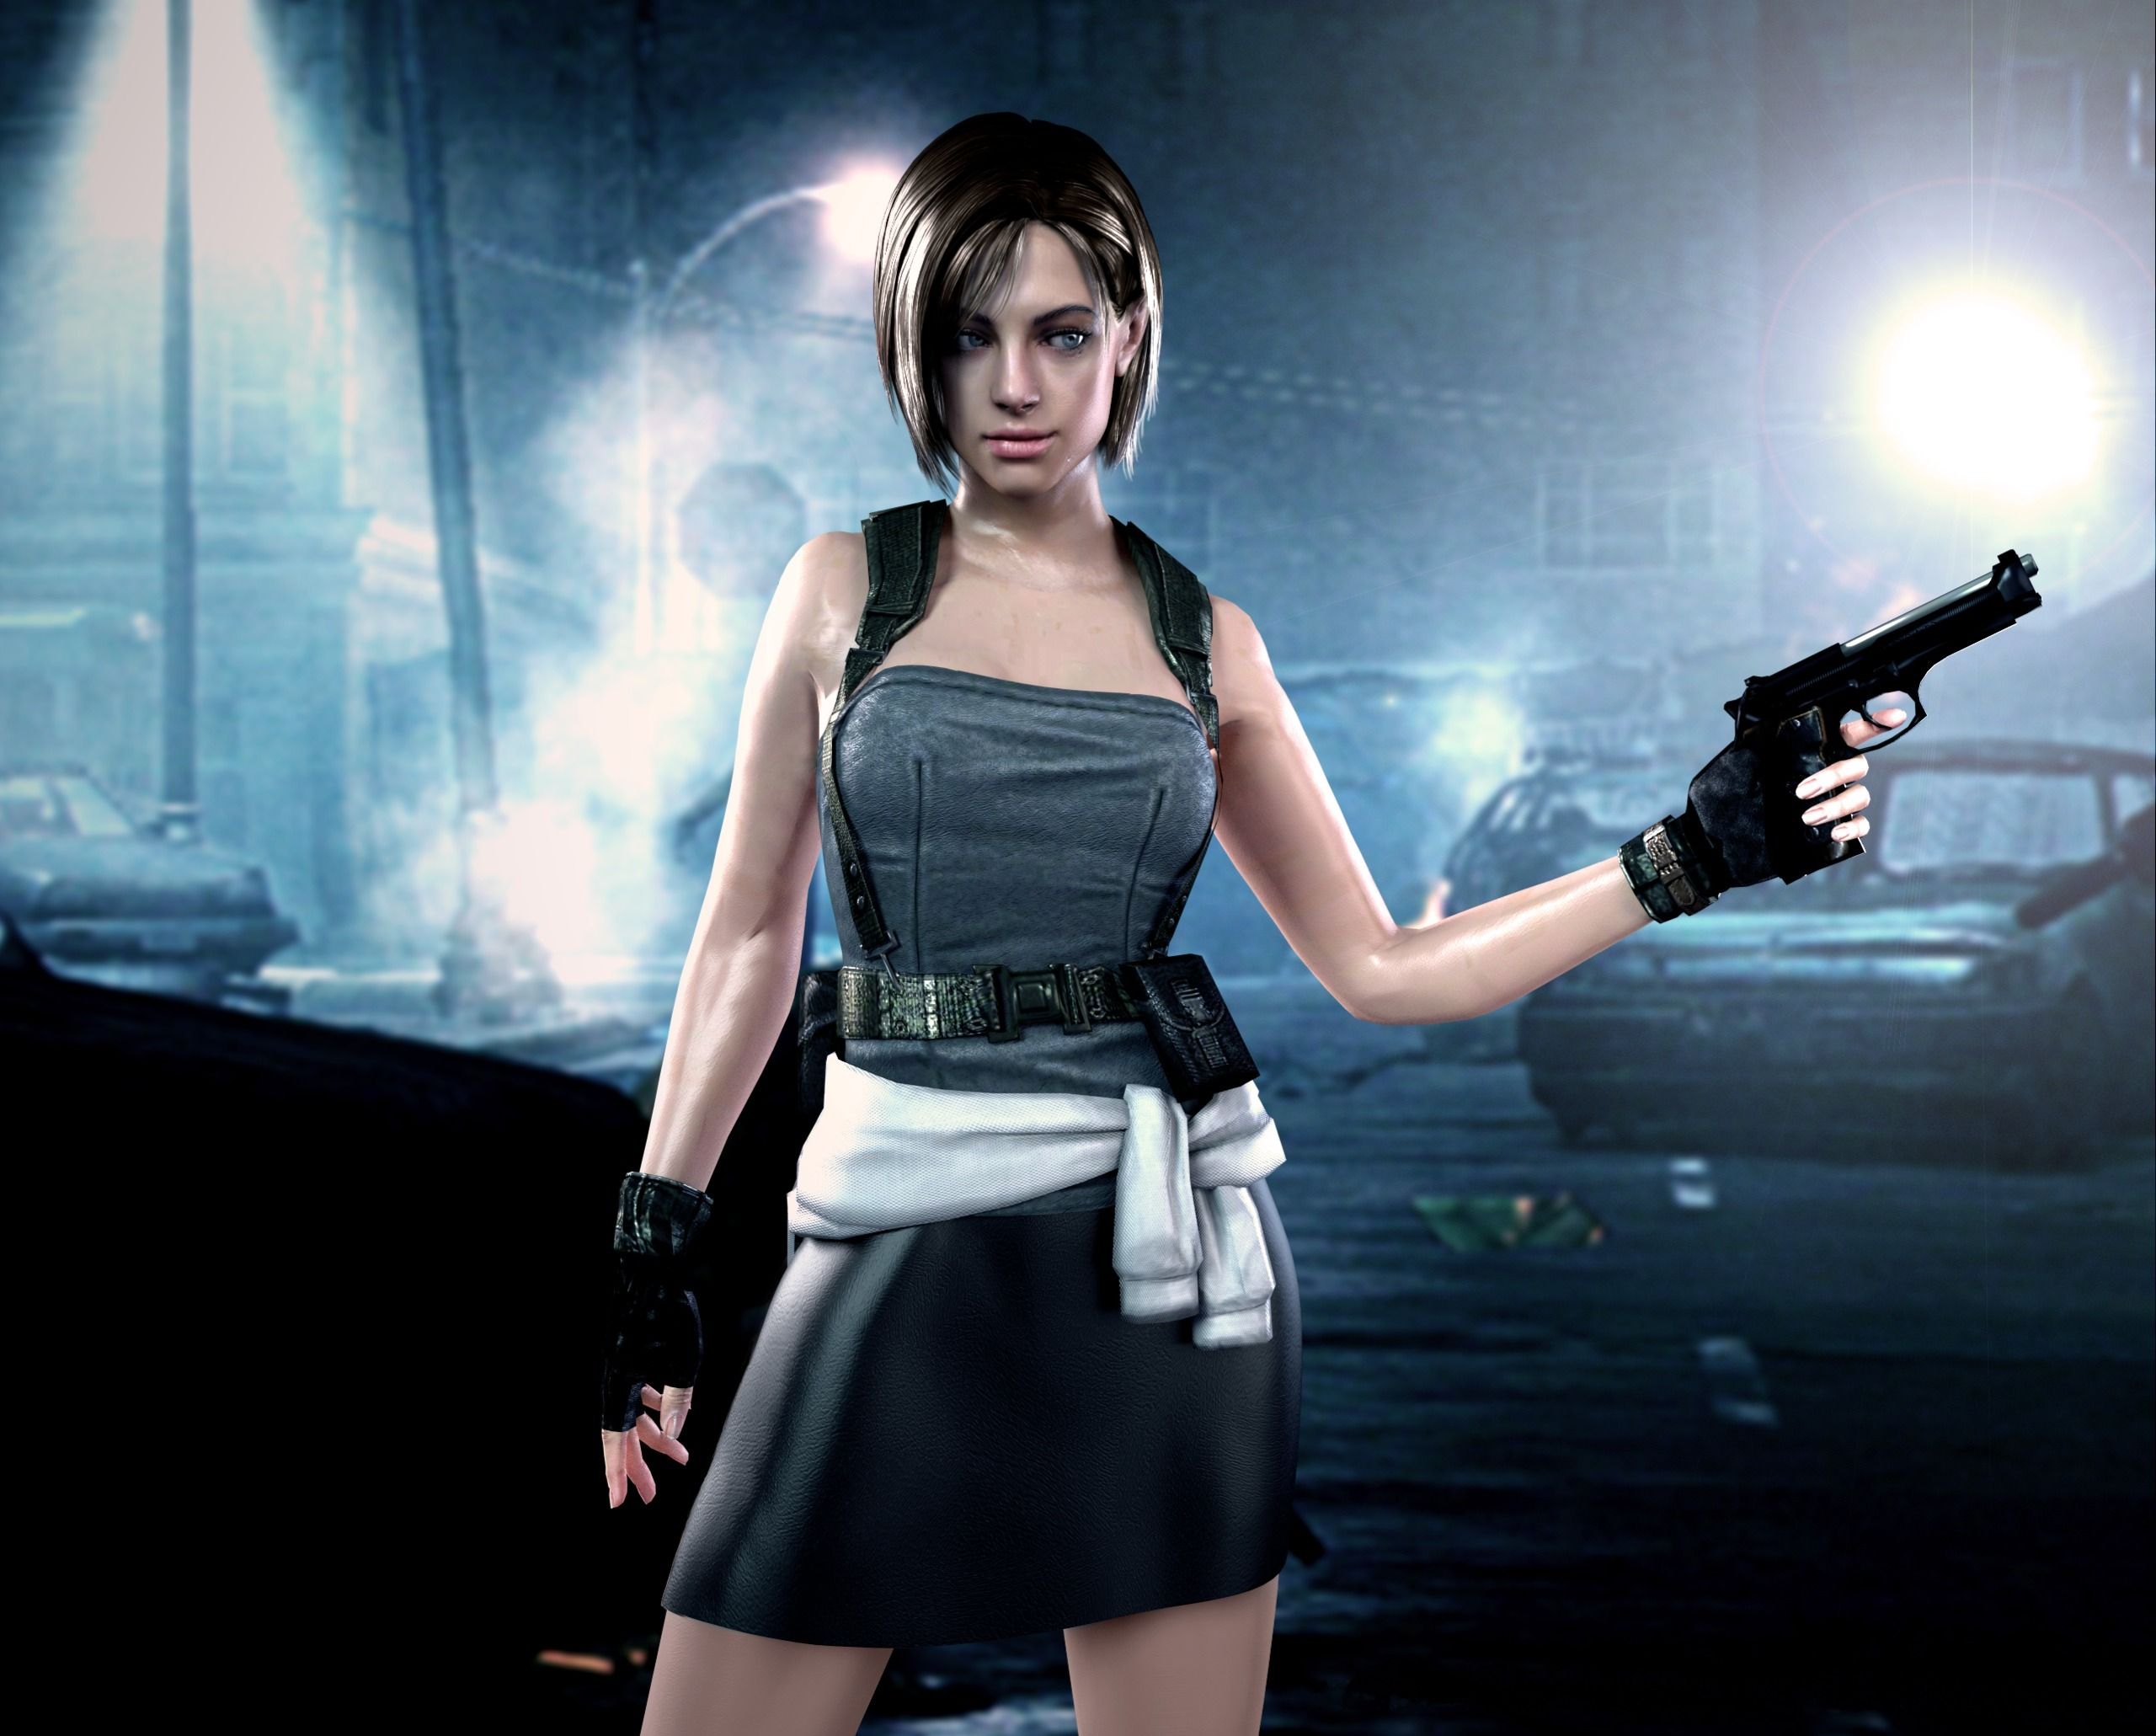 Resident Evil Pistols Warrior Dress Skirt Night Games Girls wallpaperx2061